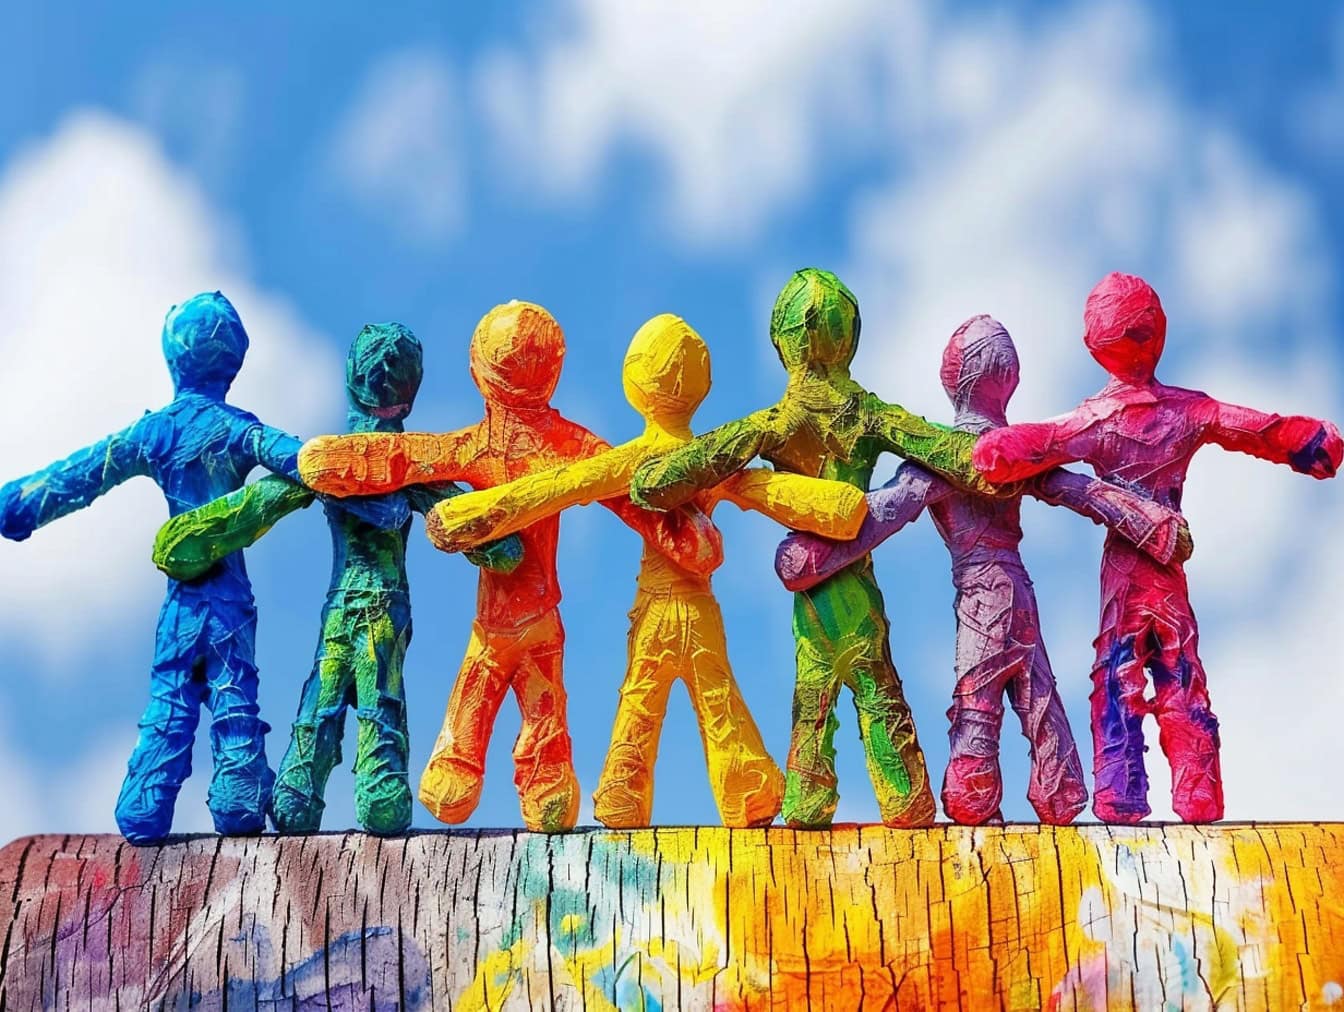 Coloridas figuritas de papel tomadas de la mano, una ilustración de la unión, la tolerancia y la igualdad entre los diferentes grupos étnicos de personas